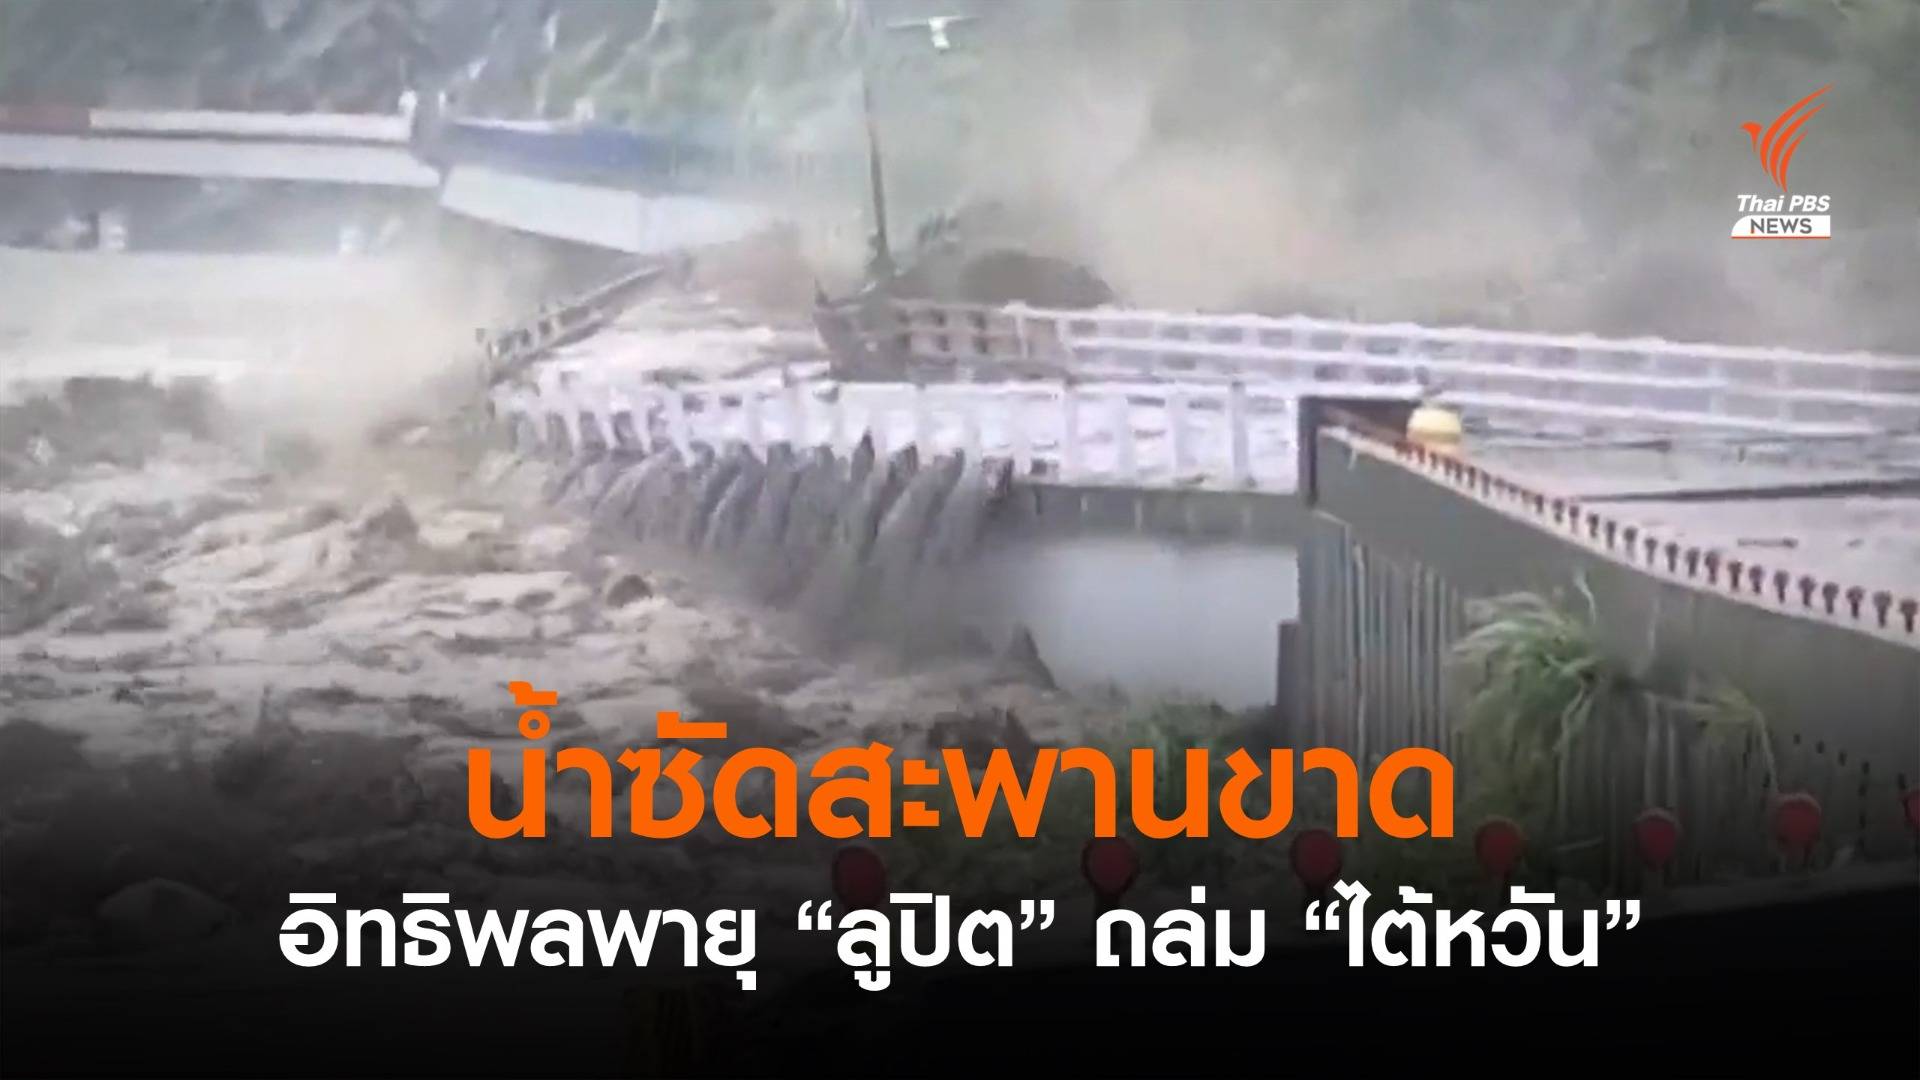 น้ำซัดสะพานขาด หลังพายุ "ลูปิต" ถล่มไต้หวัน 